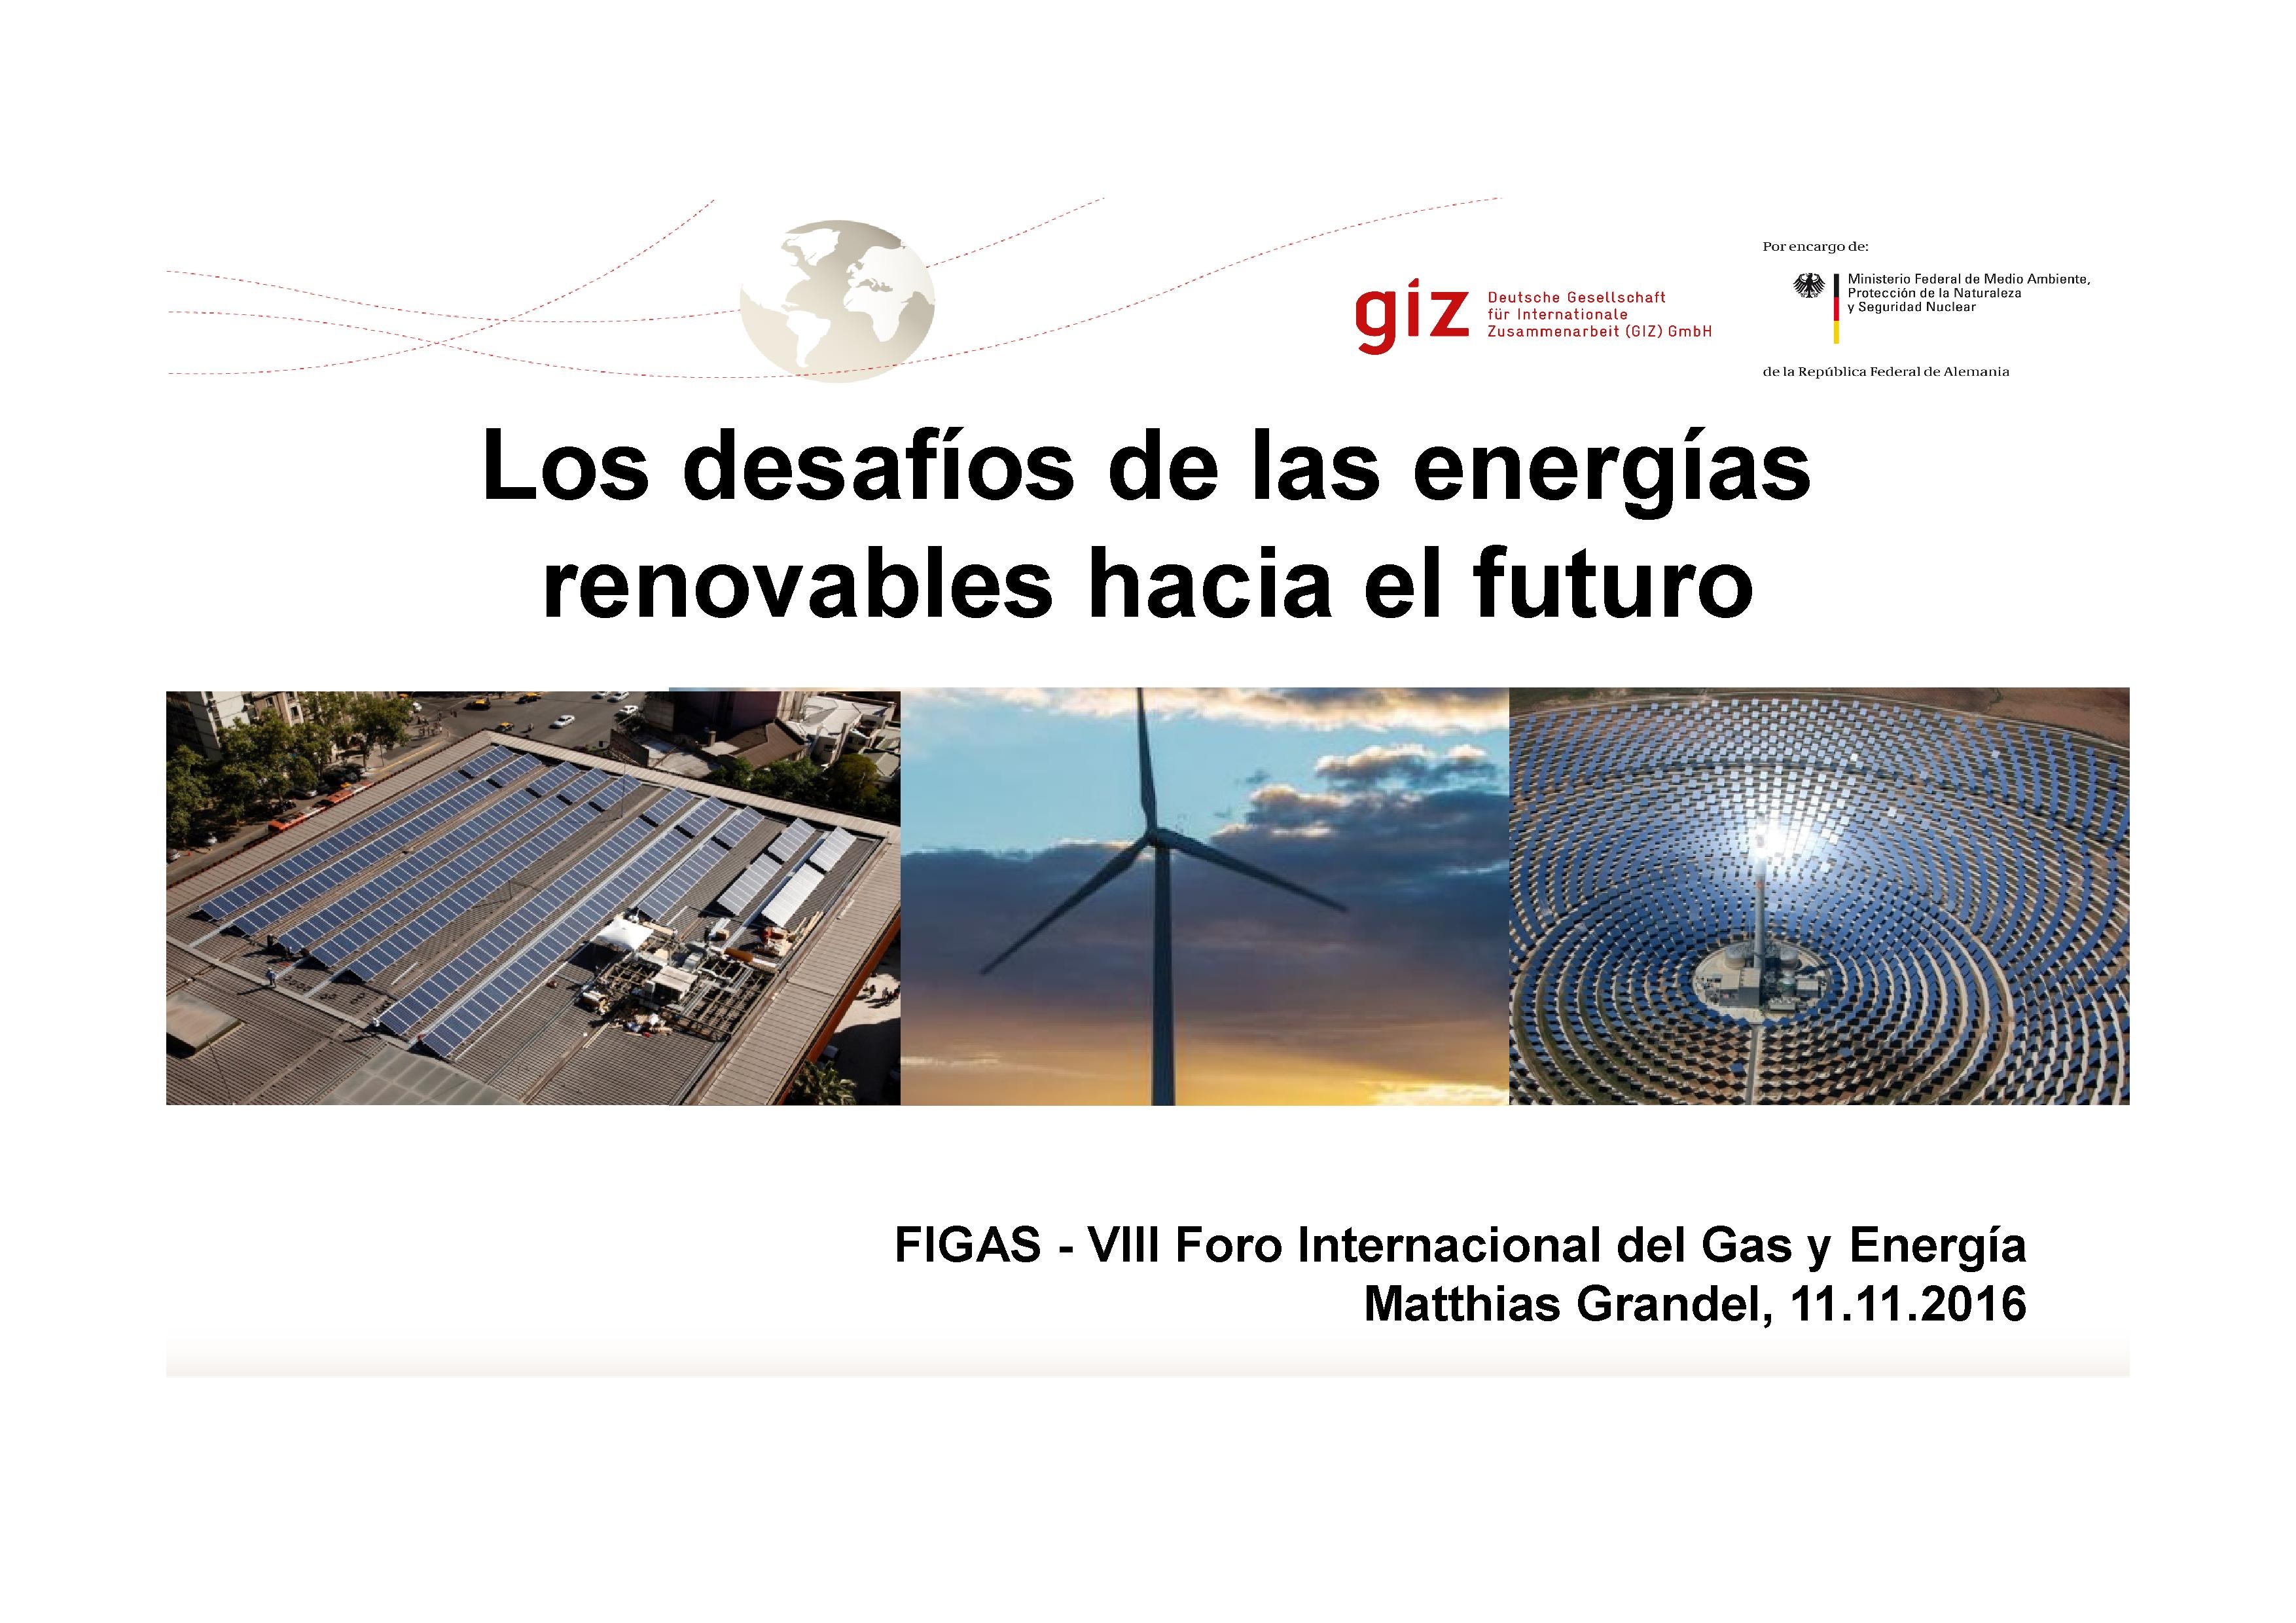 Los desafíos de las energías renovables hacia el futuro - Presentation (spanish)